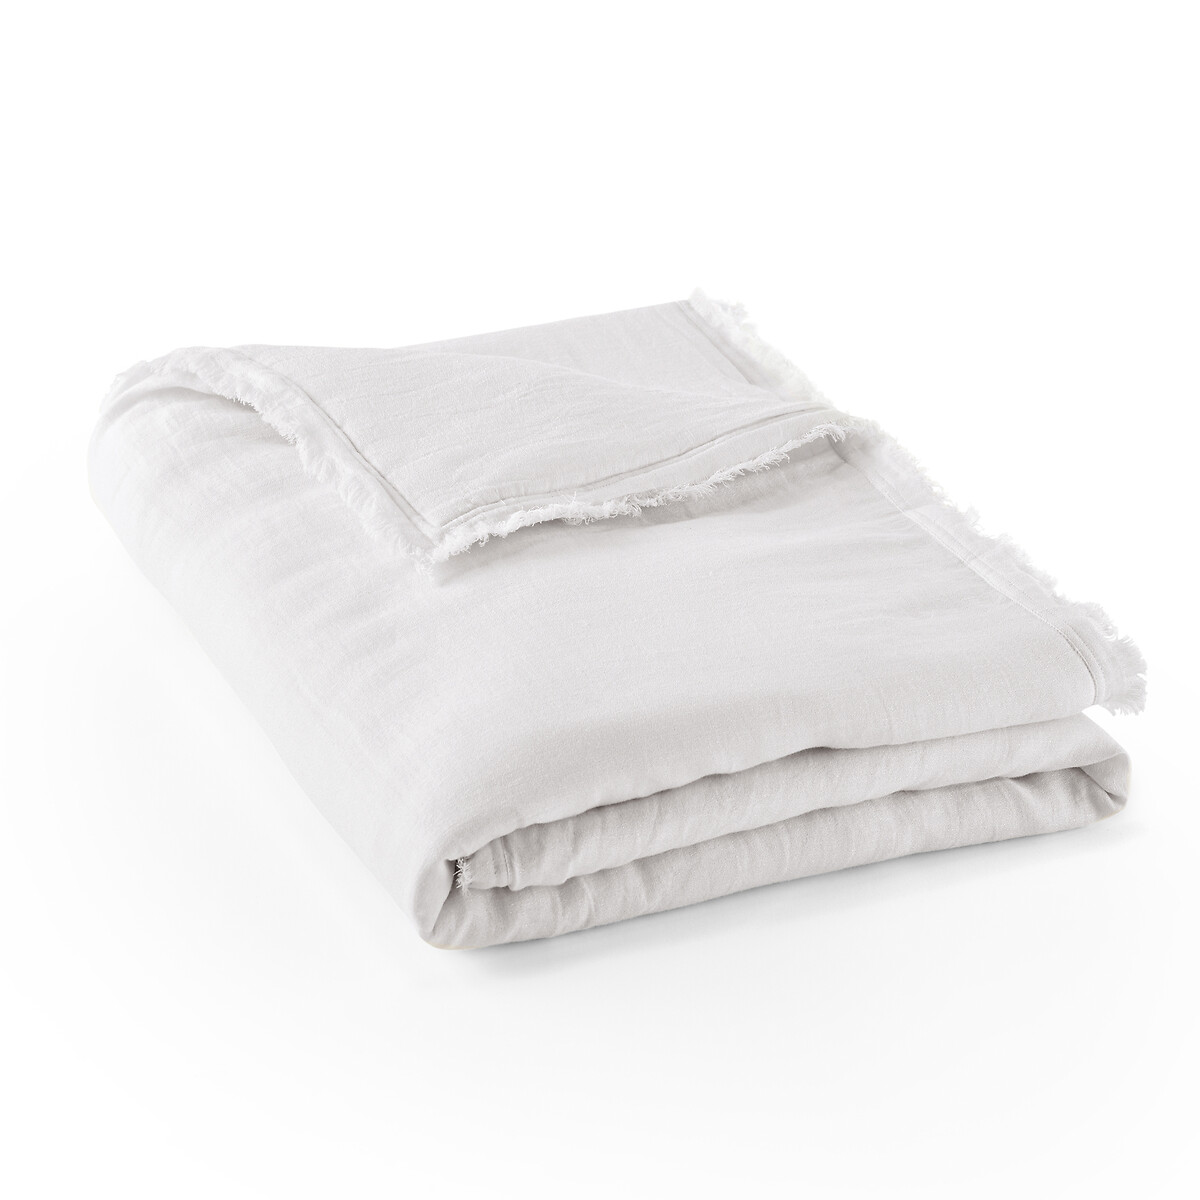 Одеяло La Redoute Стеганое из льна и хлопка Anchaly 130 x 180 см белый, размер 130 x 180 см - фото 1